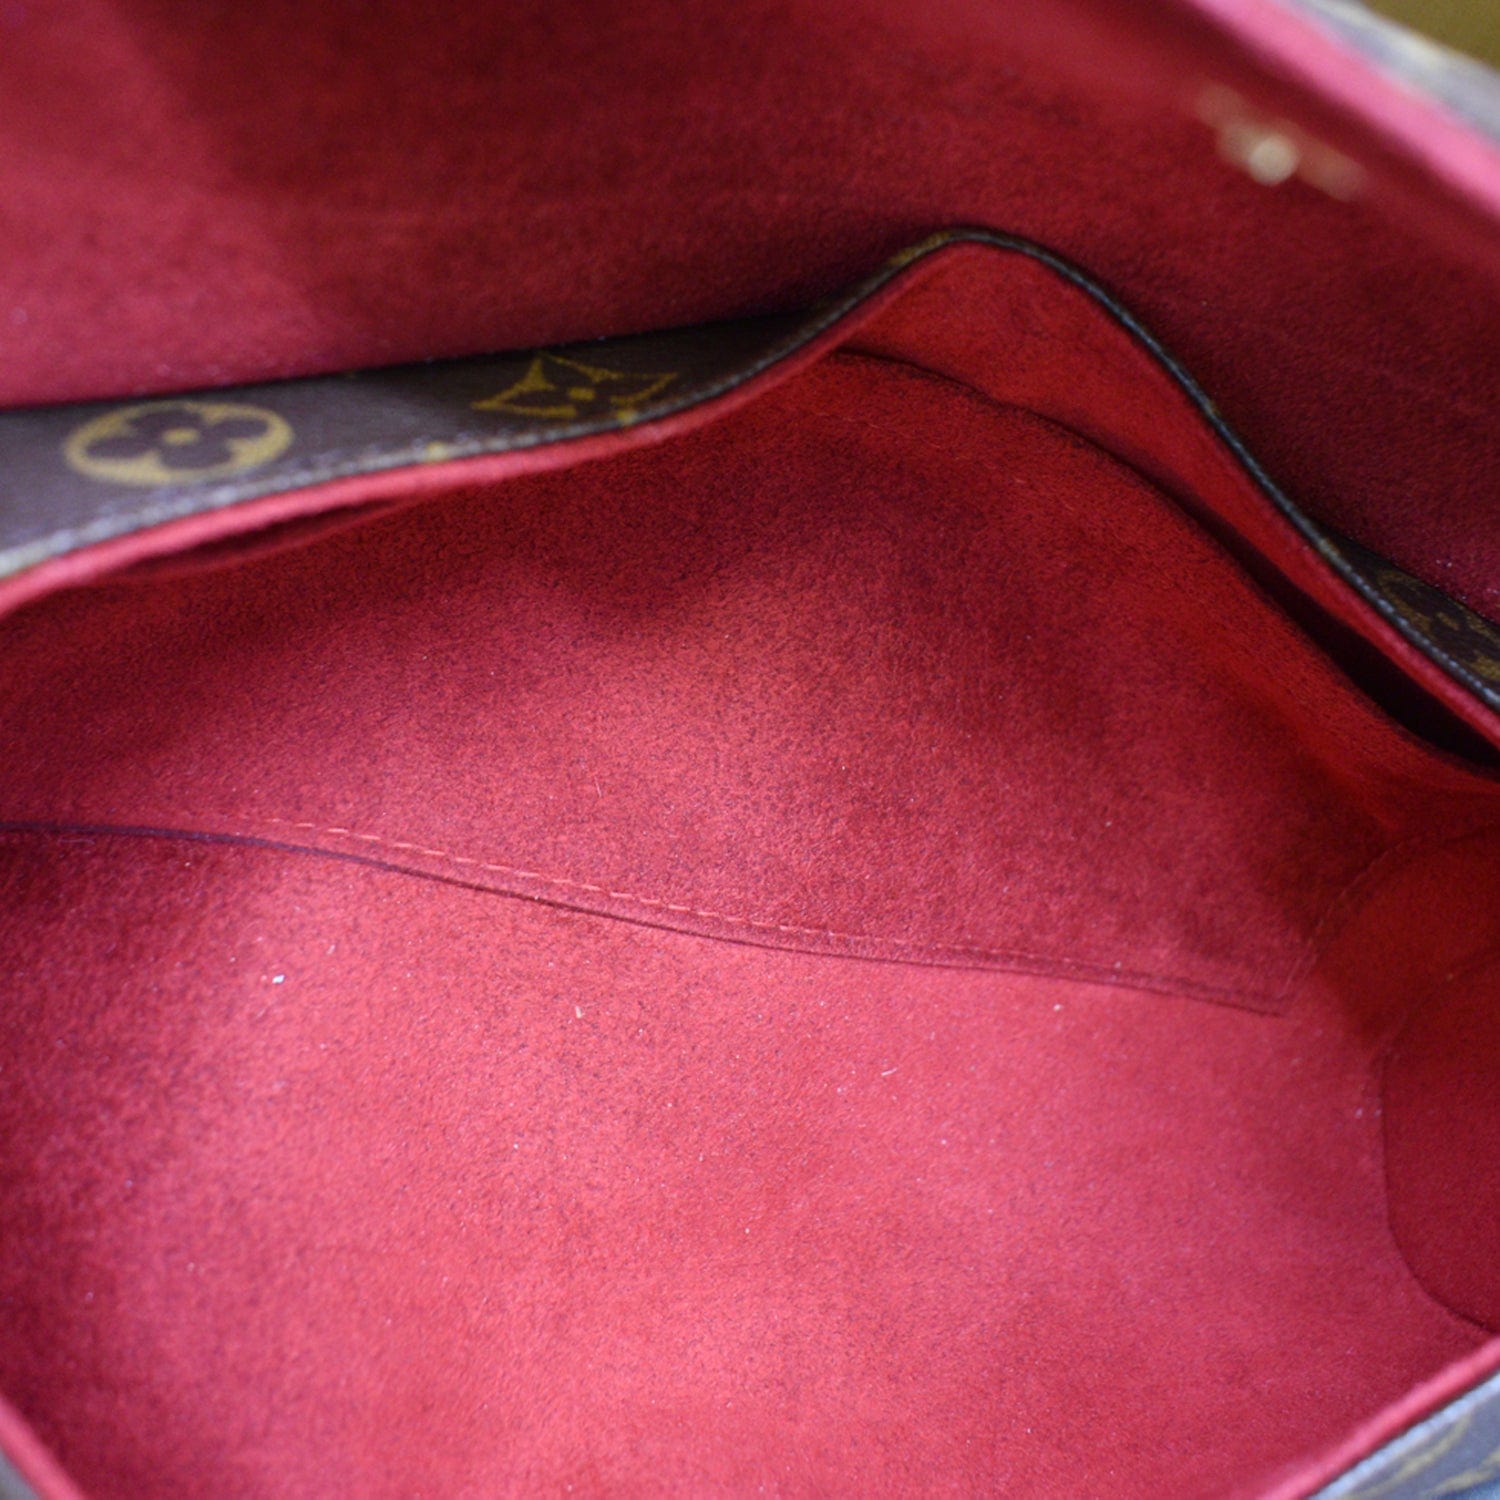 Sonatine fabric handbag Louis Vuitton Brown in Cloth - 35371800